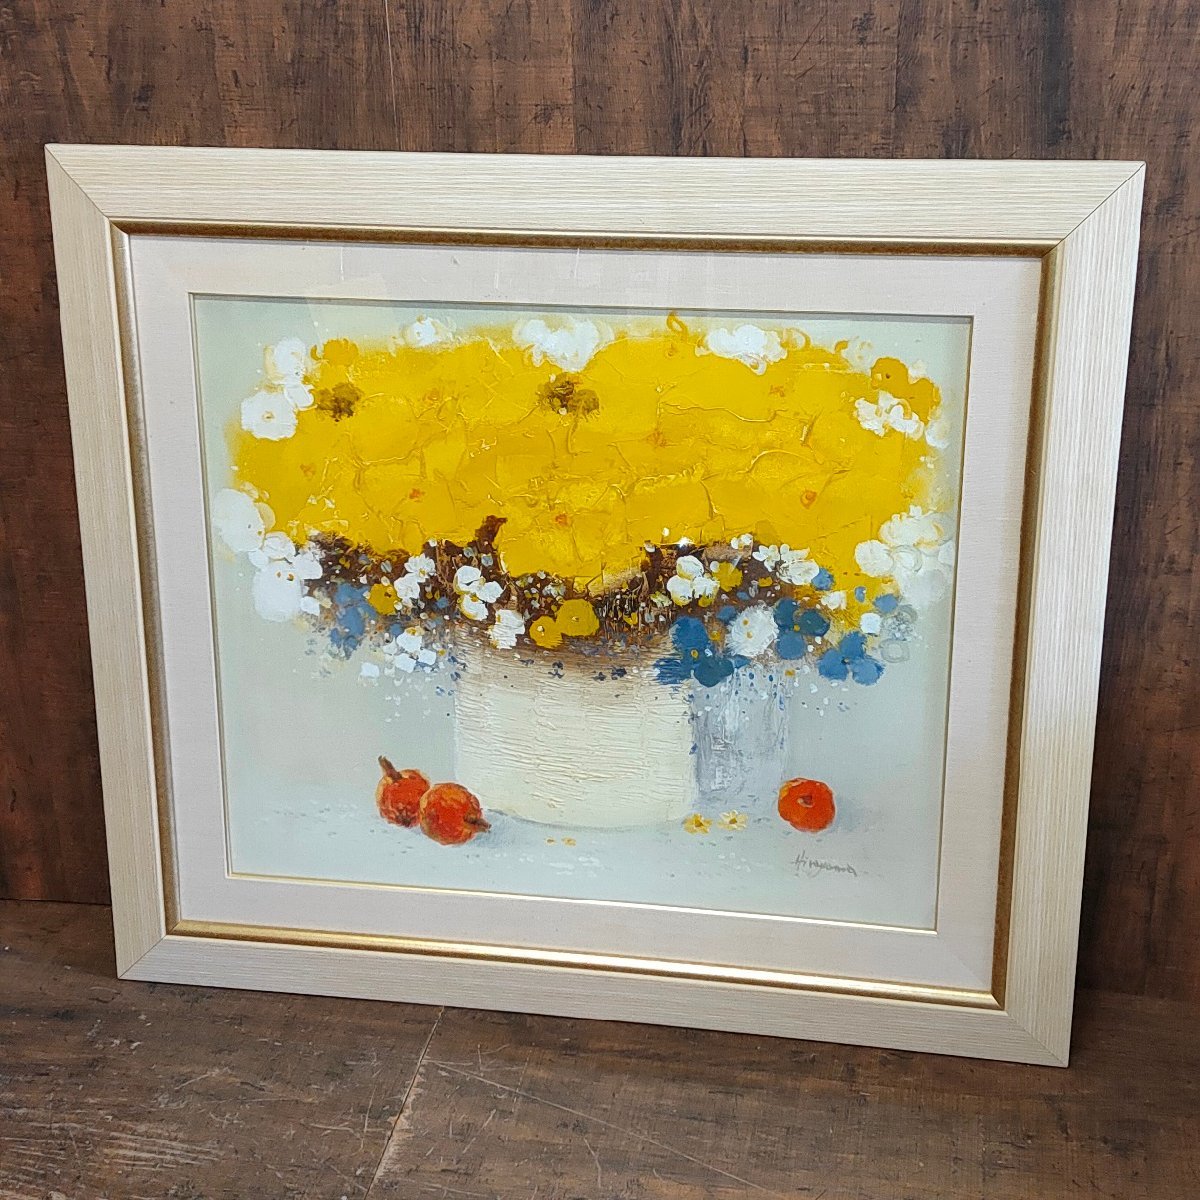 Kohei Hirayama Ölgemälde Gelbe Blumen F20 Gerahmtes Ölgemälde Stillleben Gemälde 122102/SR4/220, Malerei, Ölgemälde, Stillleben